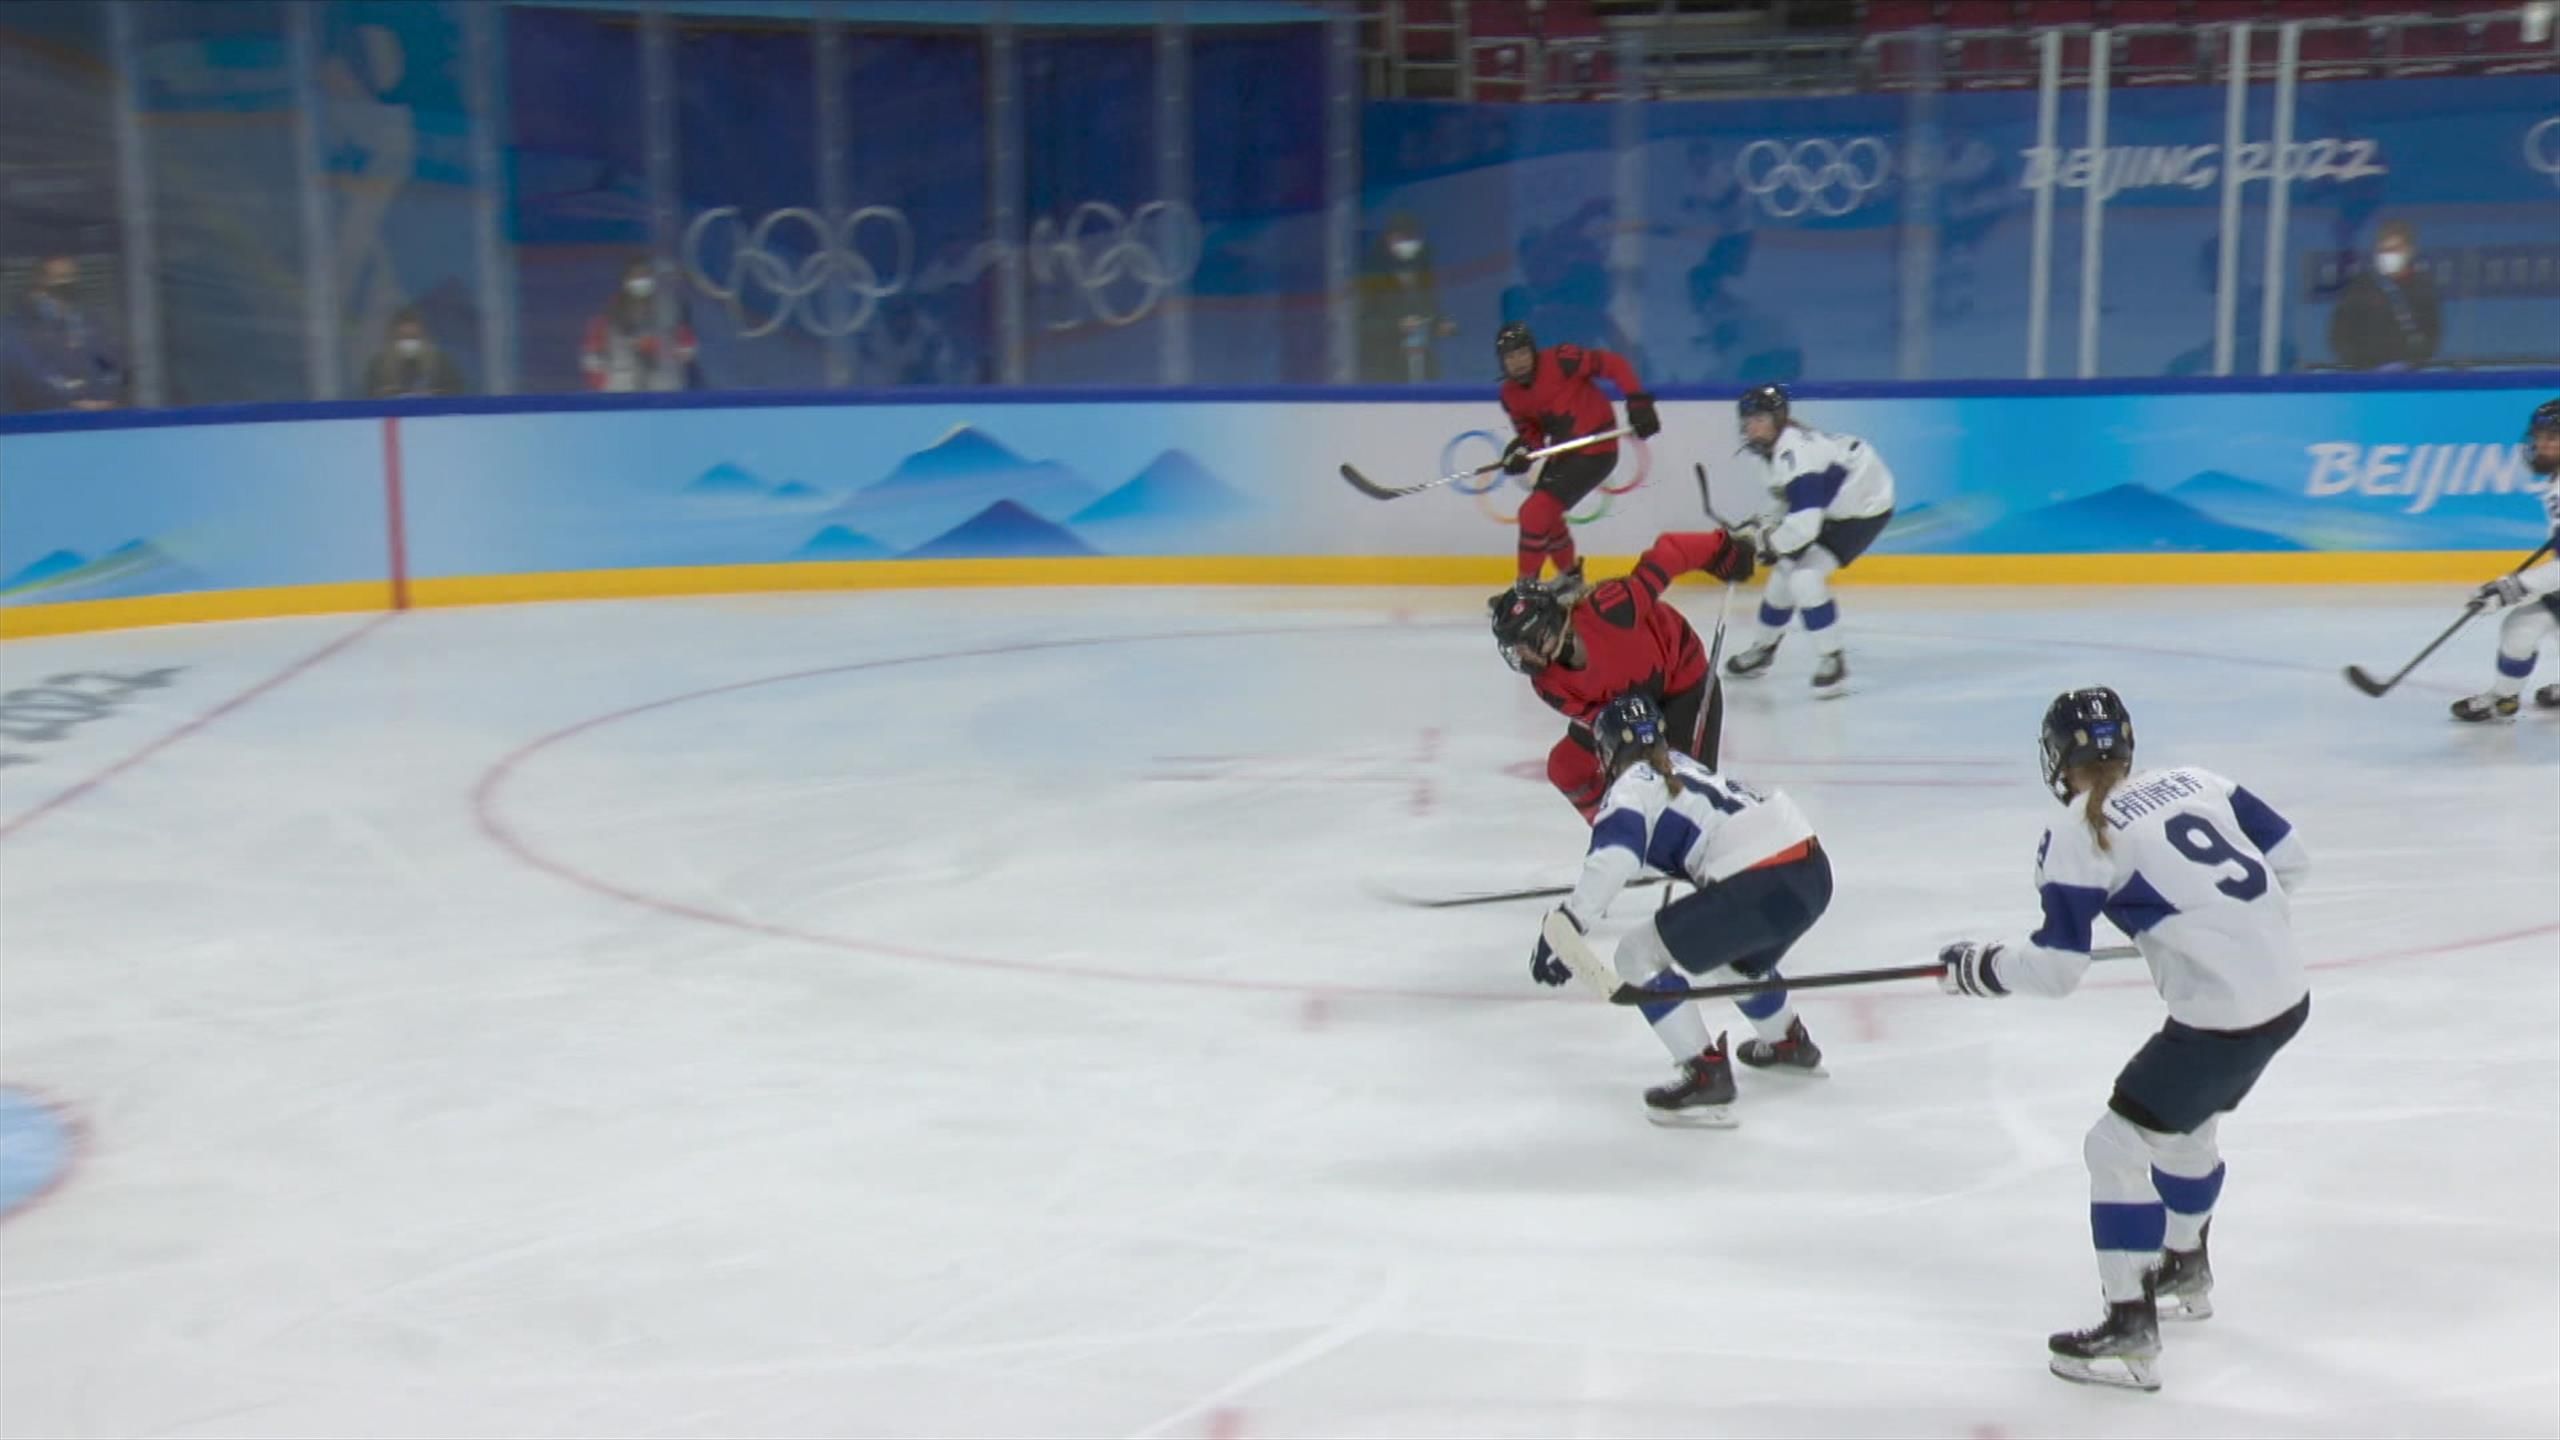 Olympia - Eishockey Ice Hockey - Eishockey Video